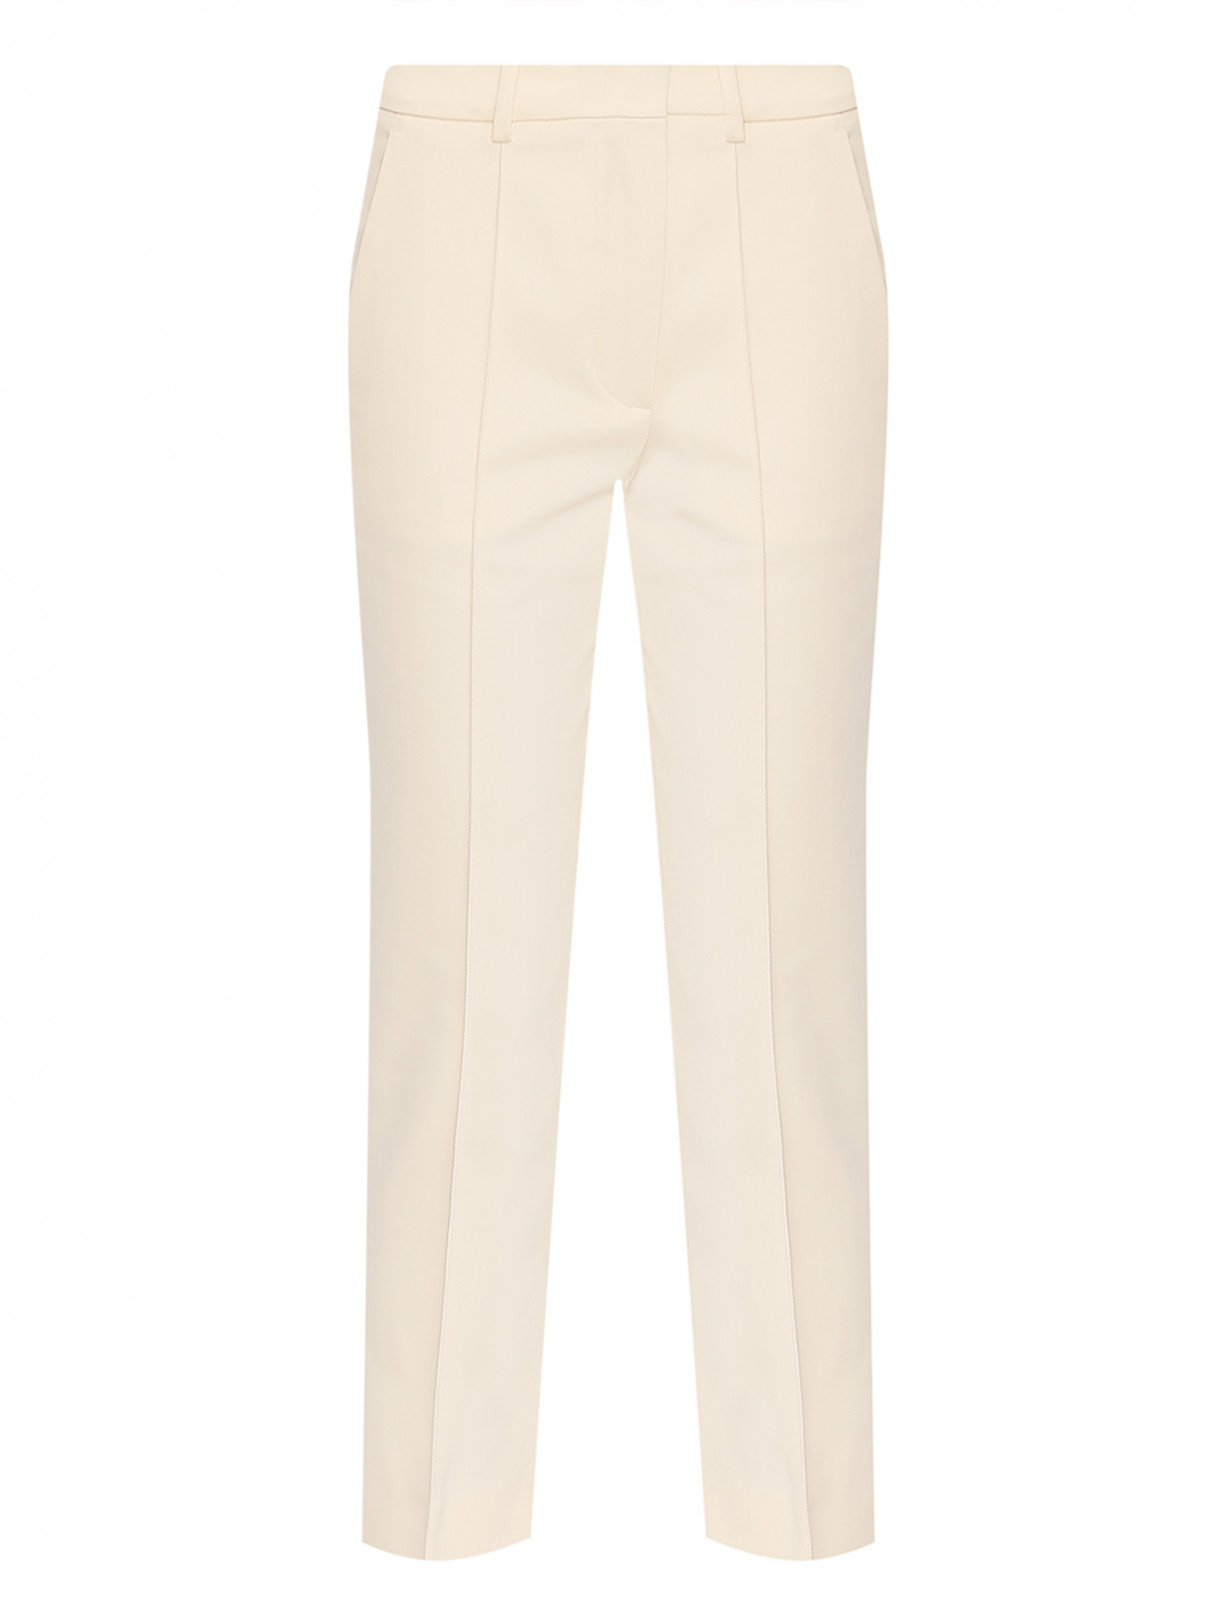 Укороченные брюки из хлопка Sportmax  –  Общий вид  – Цвет:  Белый